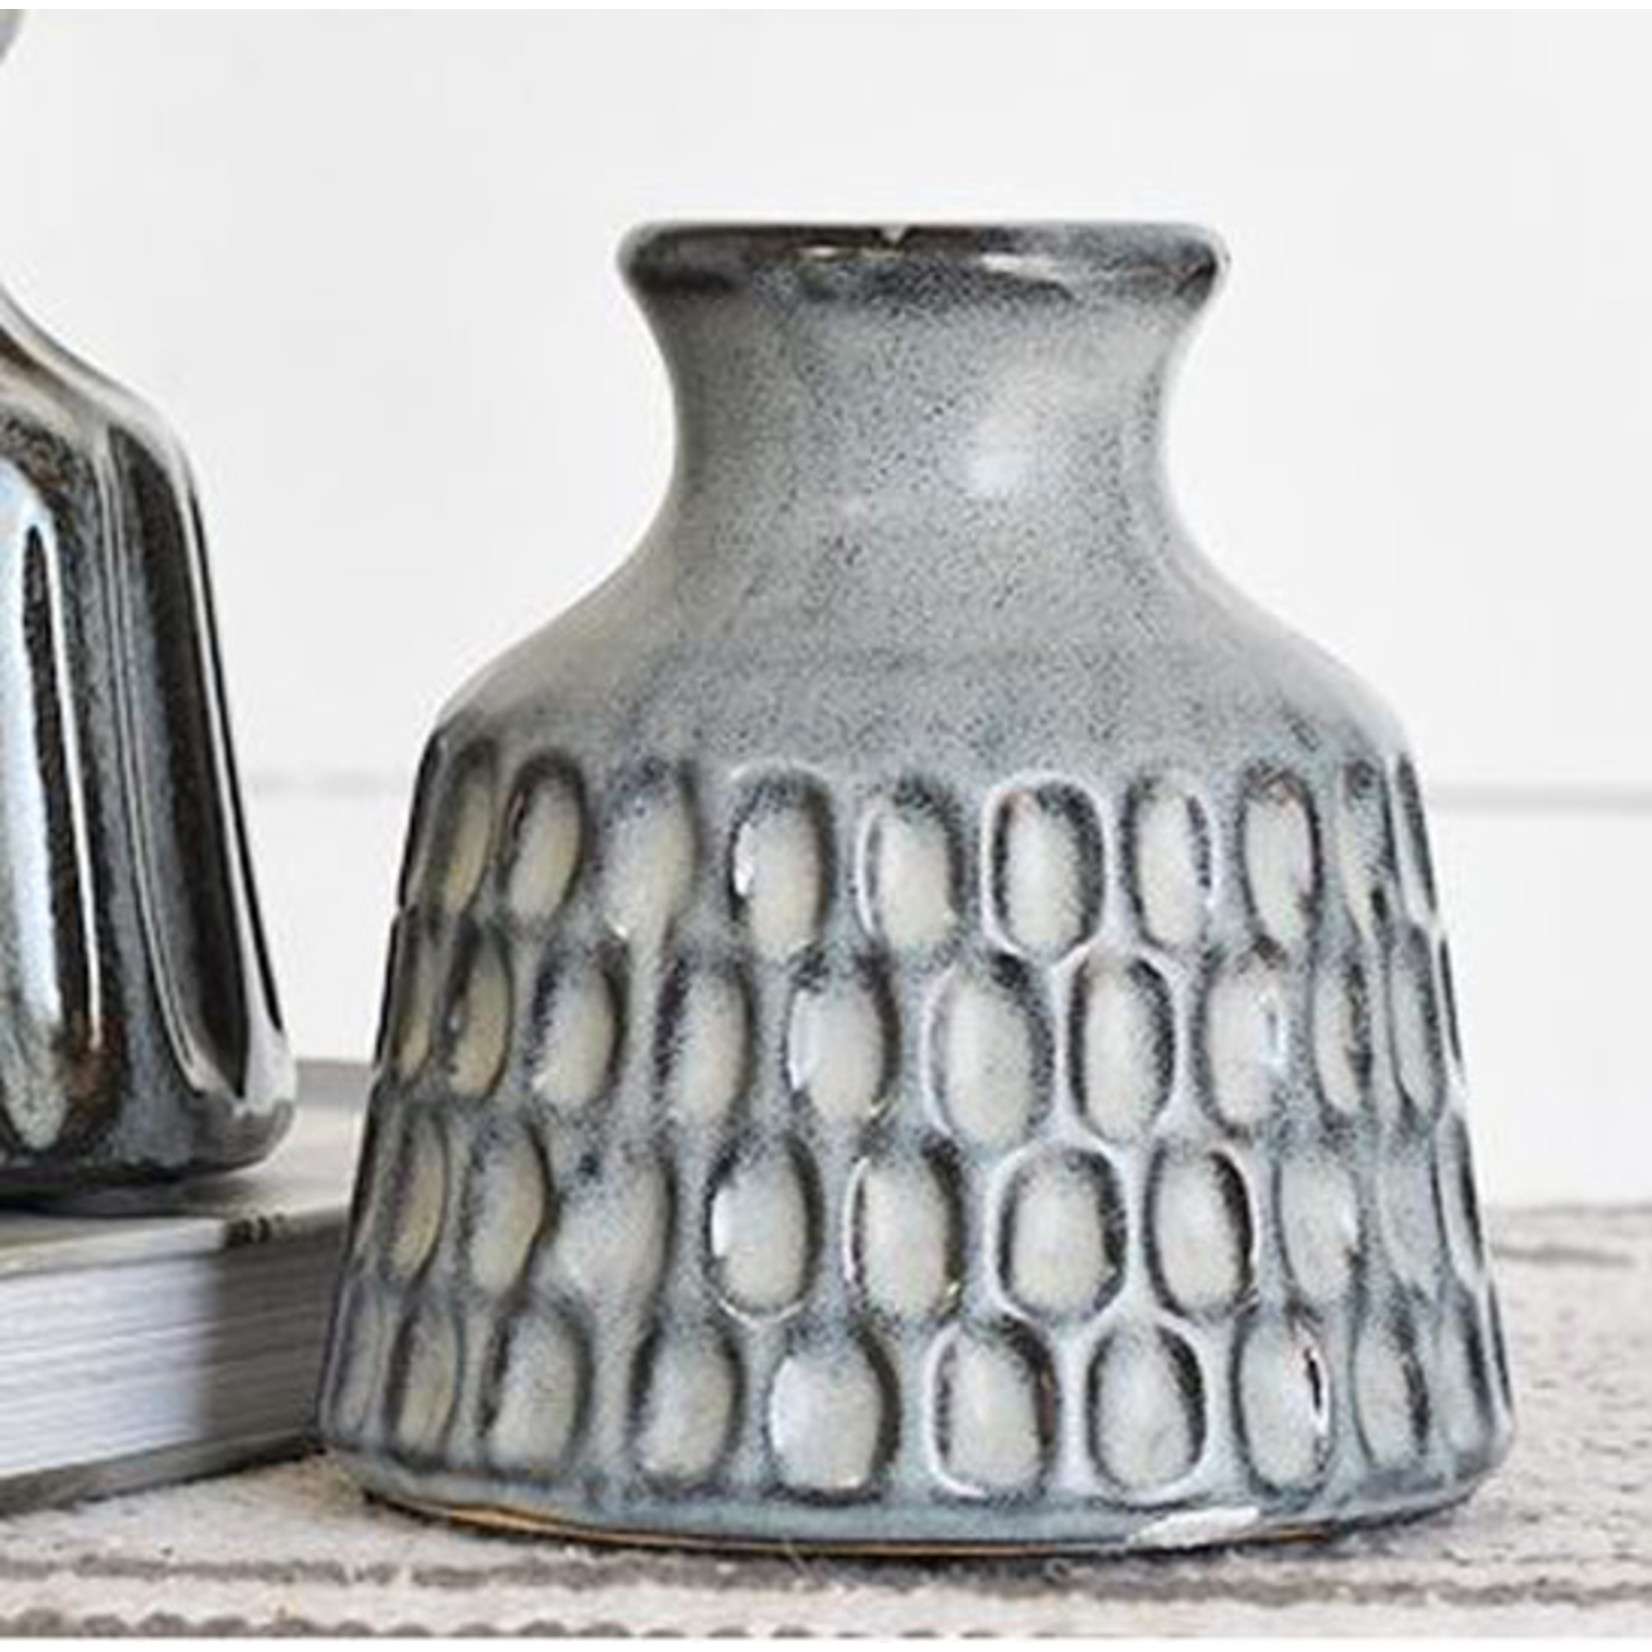 Mickler & Co. Clove Vase - Thumbprint